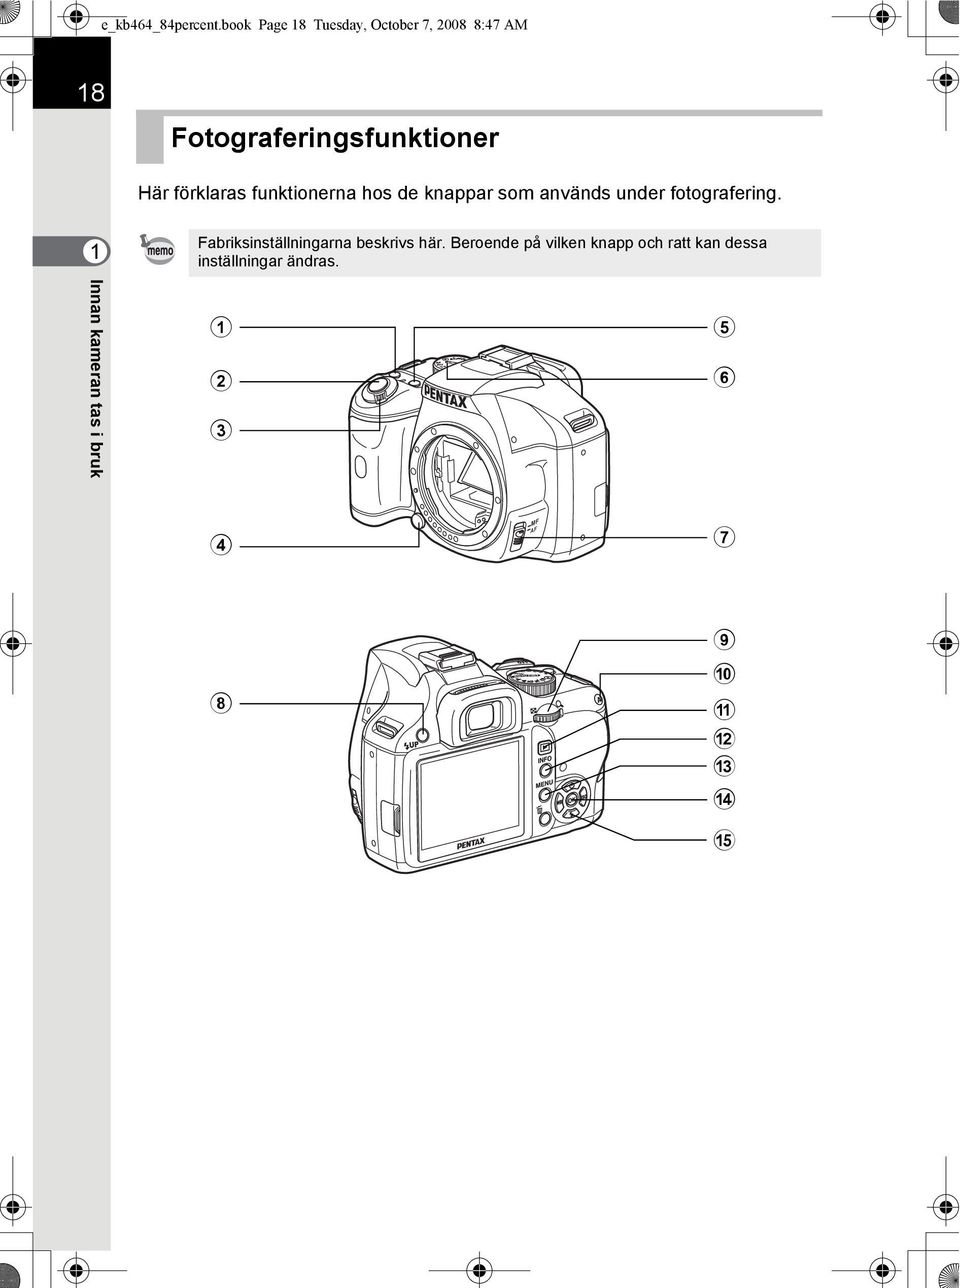 förklaras funktionerna hos de knappar som används under fotografering.